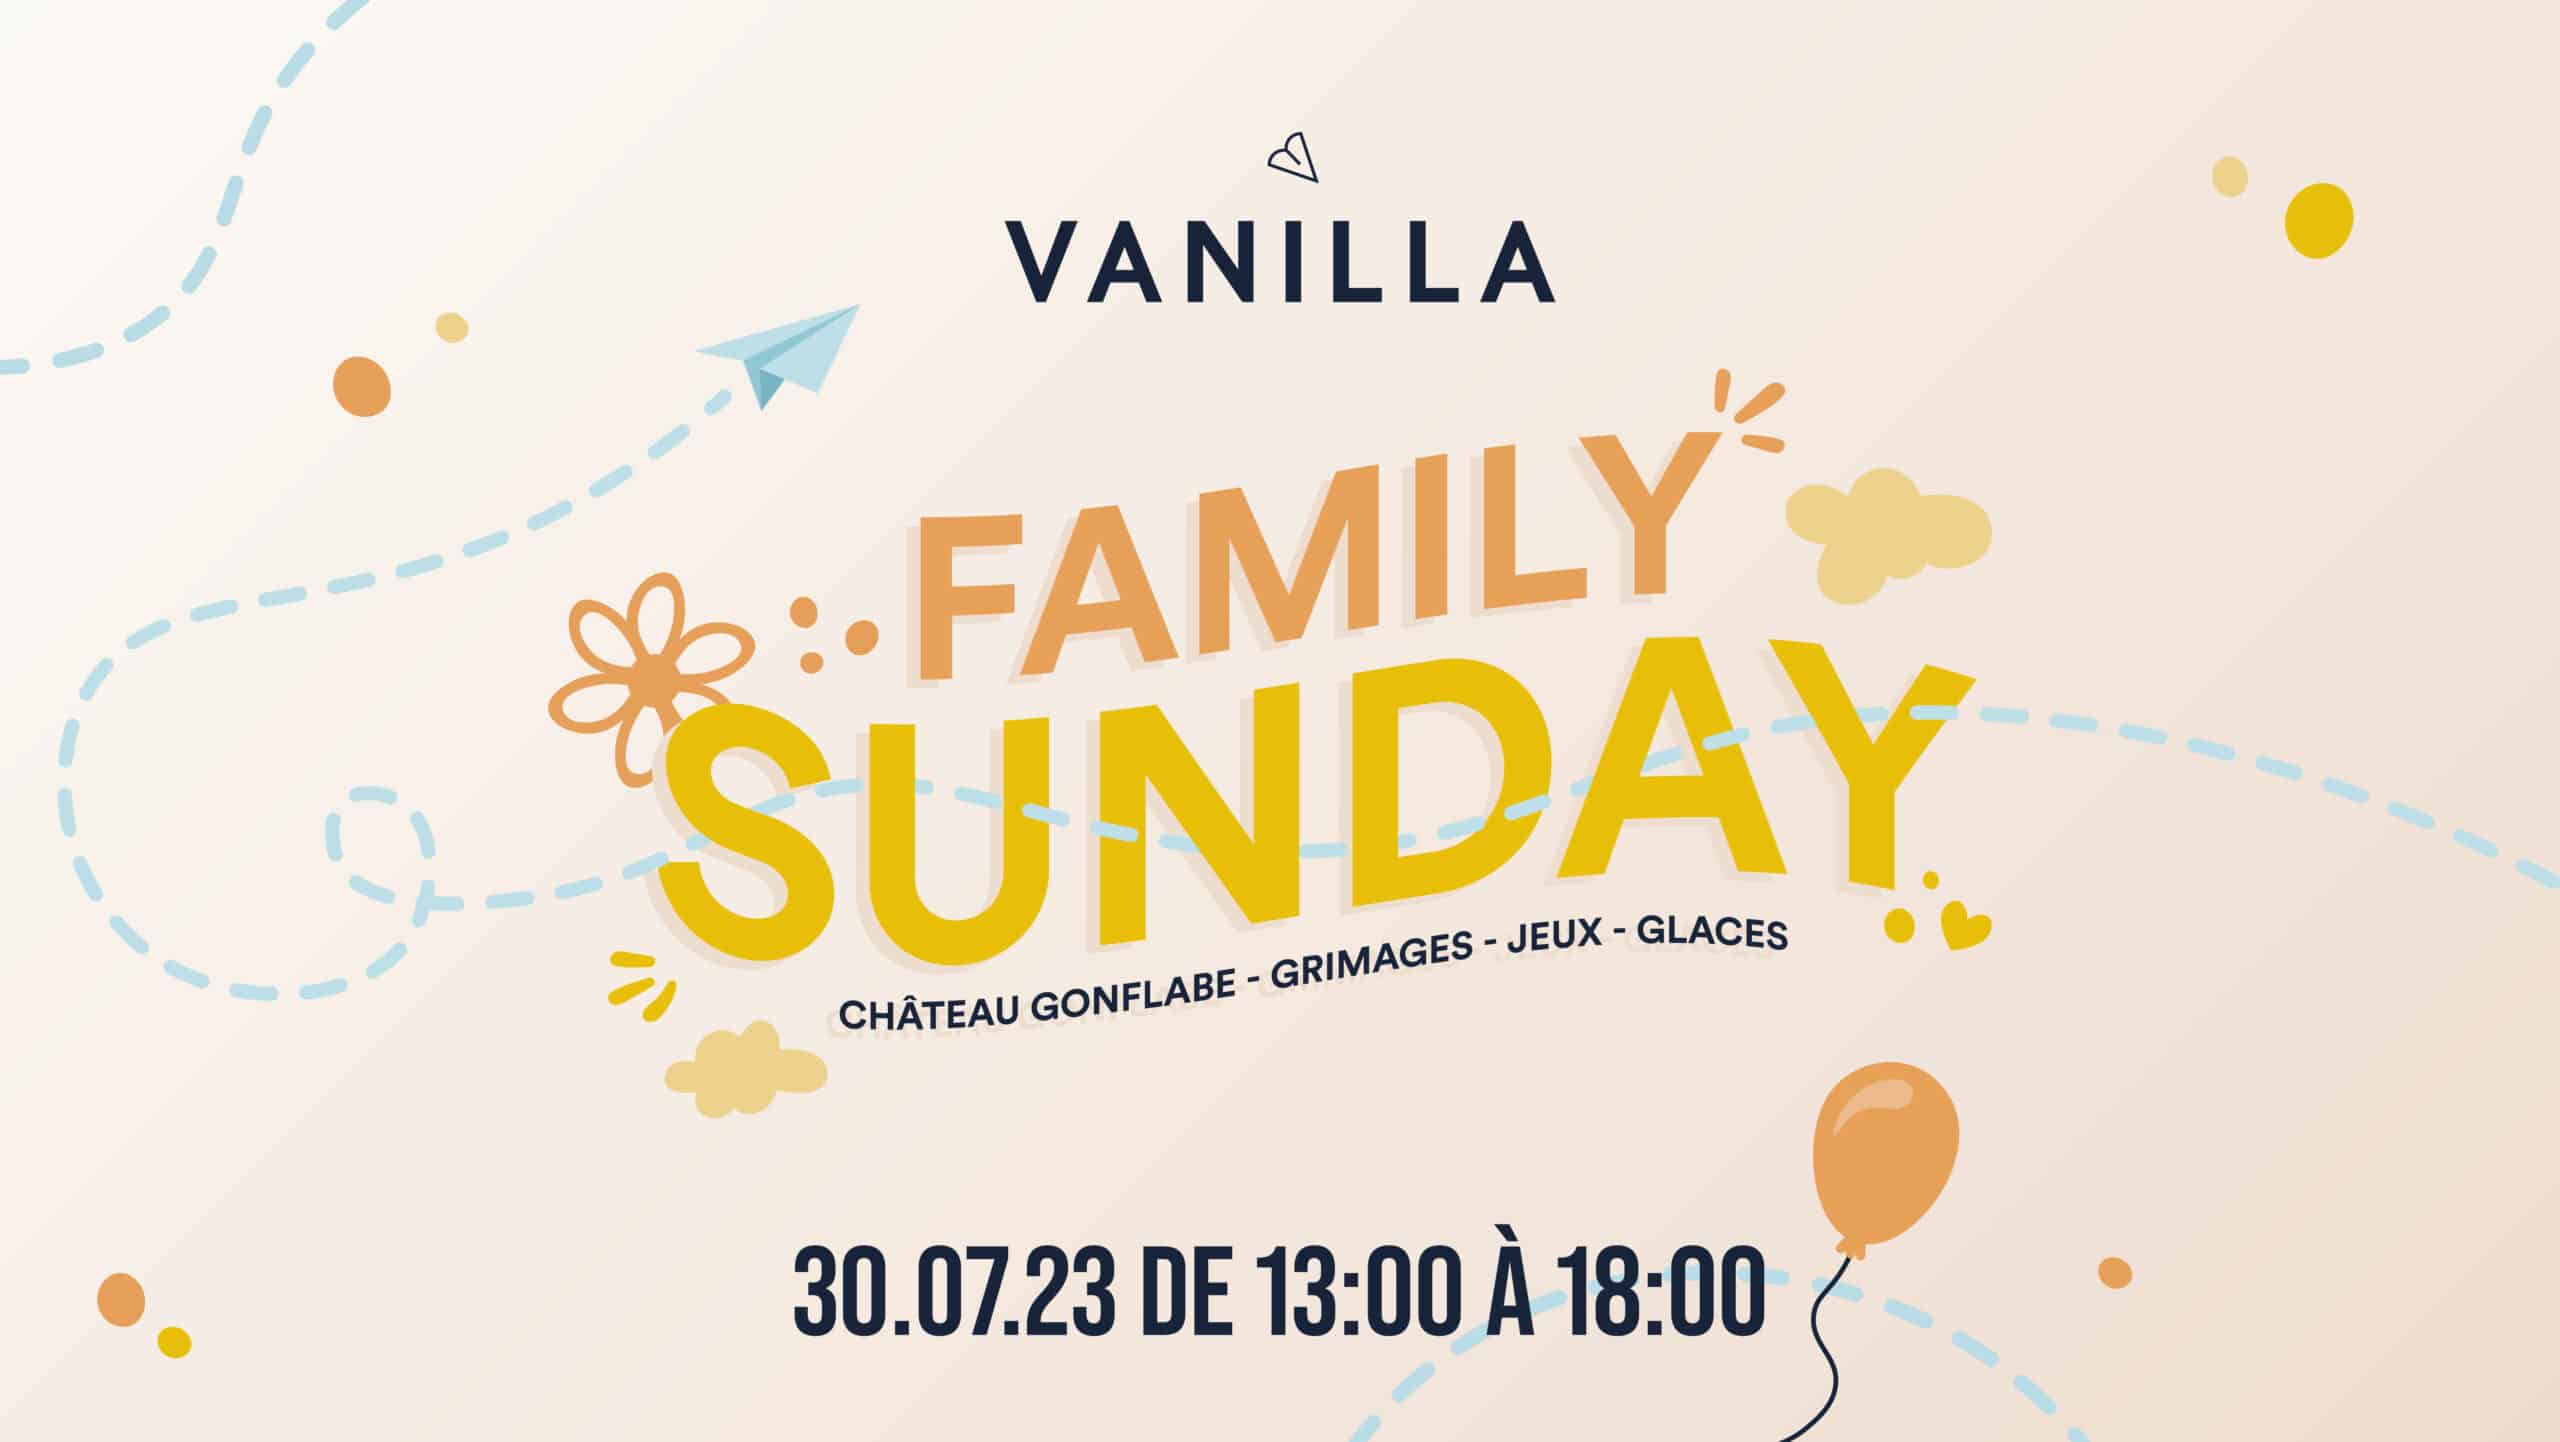 vanilla-events-sunday-ML_Vanilla-event-sunday-07-30